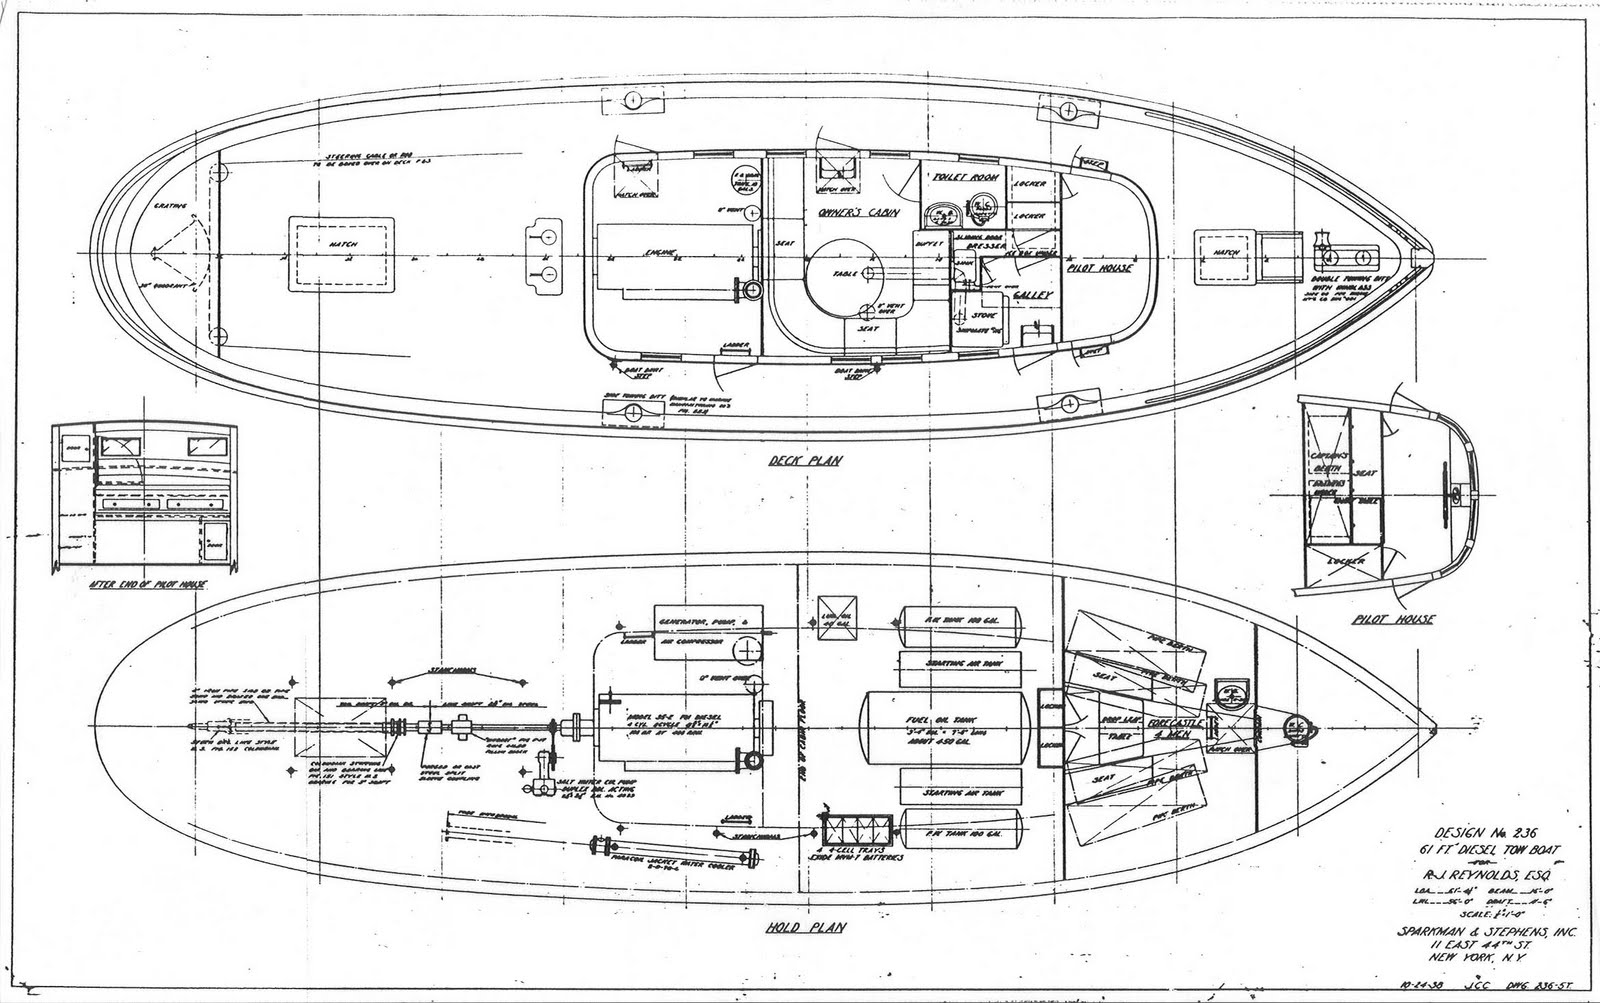 sparkman & stephens designed a tugboat.